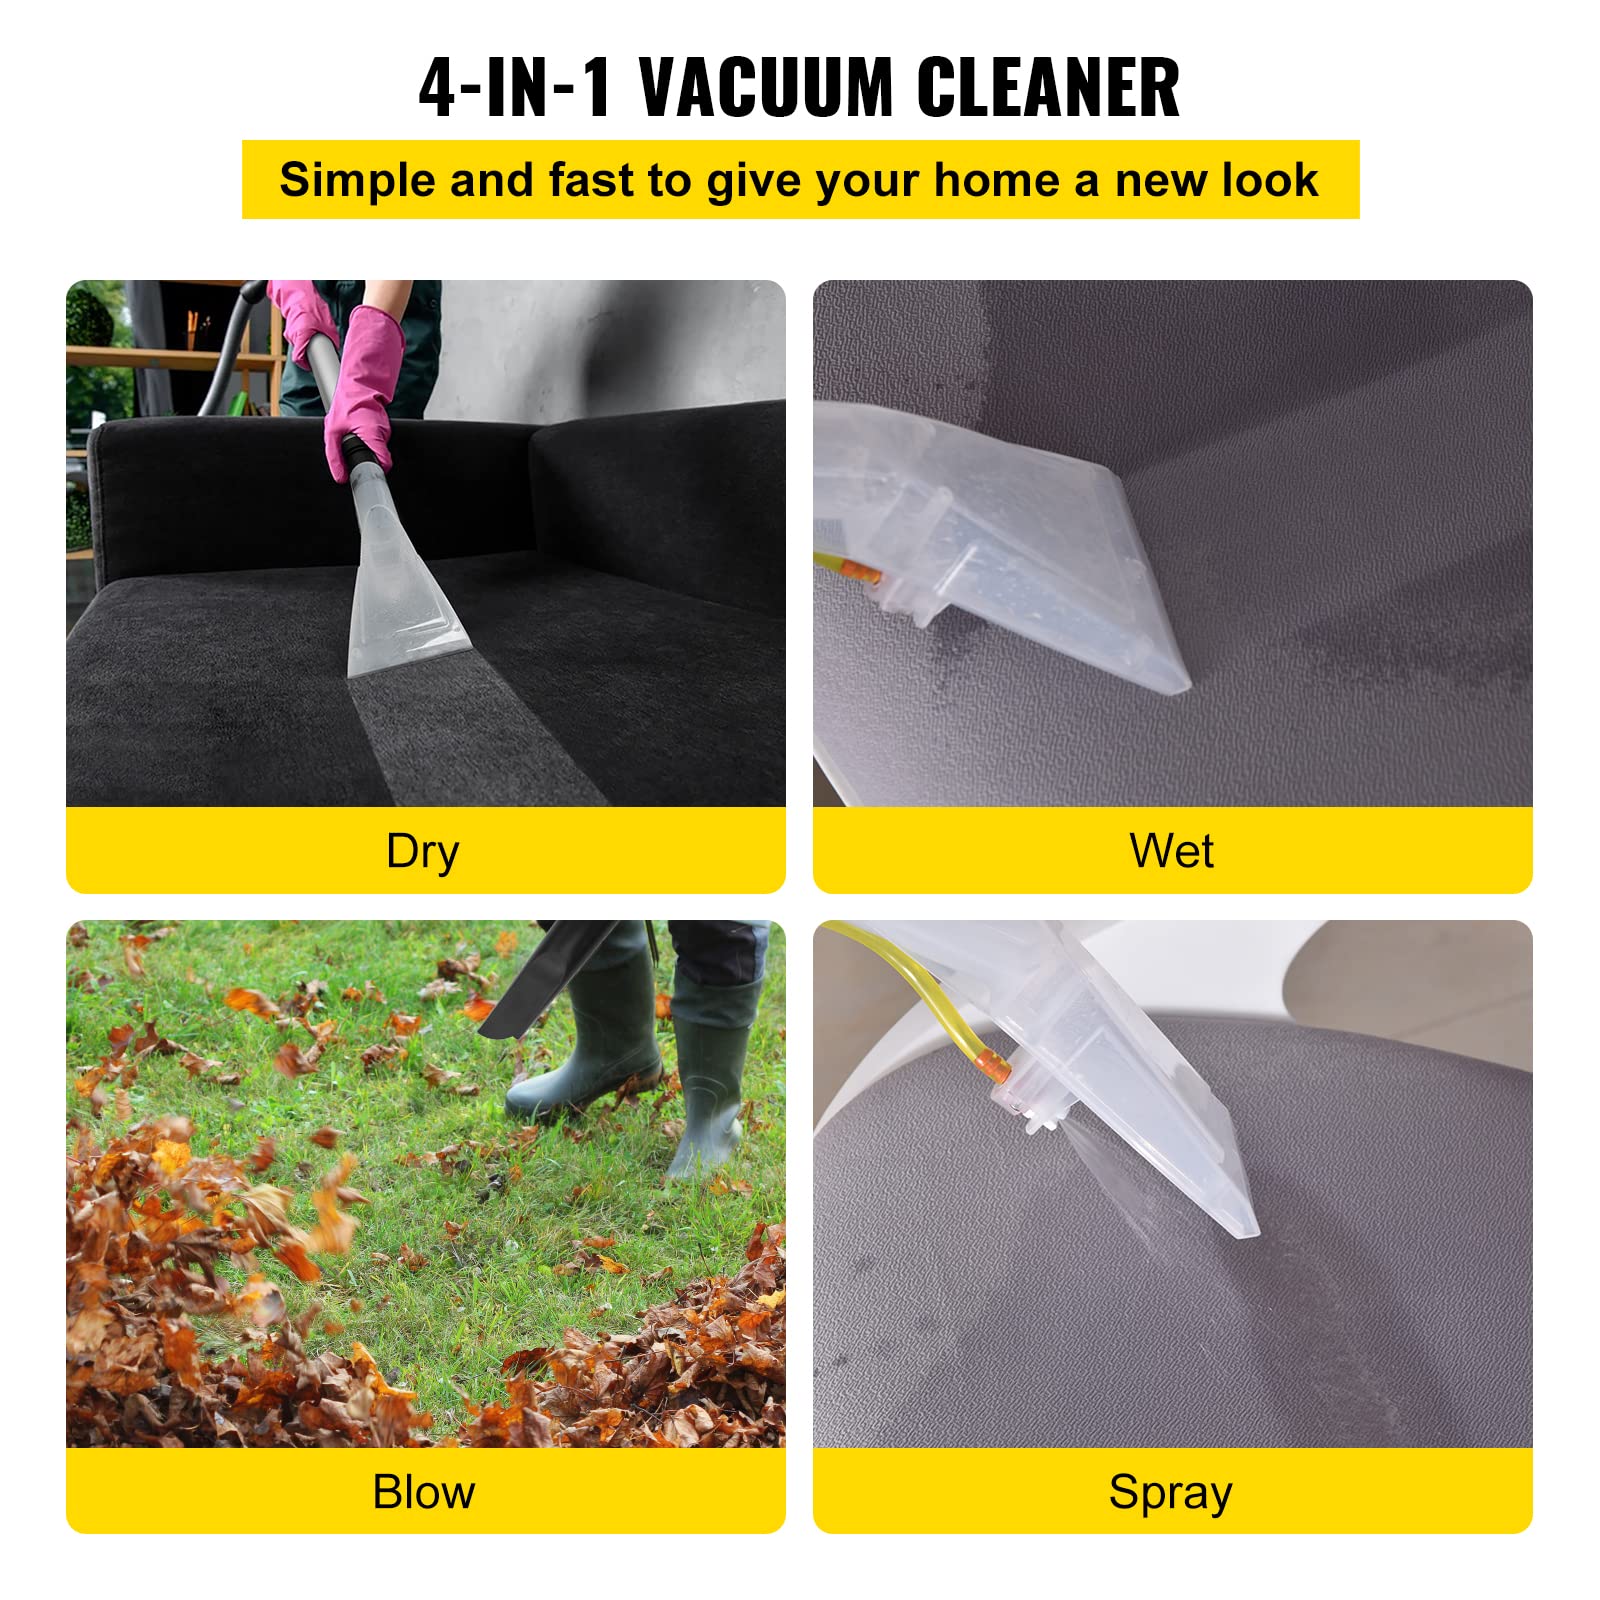 Máy giặt thảm, thổi bụi, hút bụi khô và ướt 4 IN 1 Vacuum Cleaner 1600W (Wet/Dry/Blow/Spray)